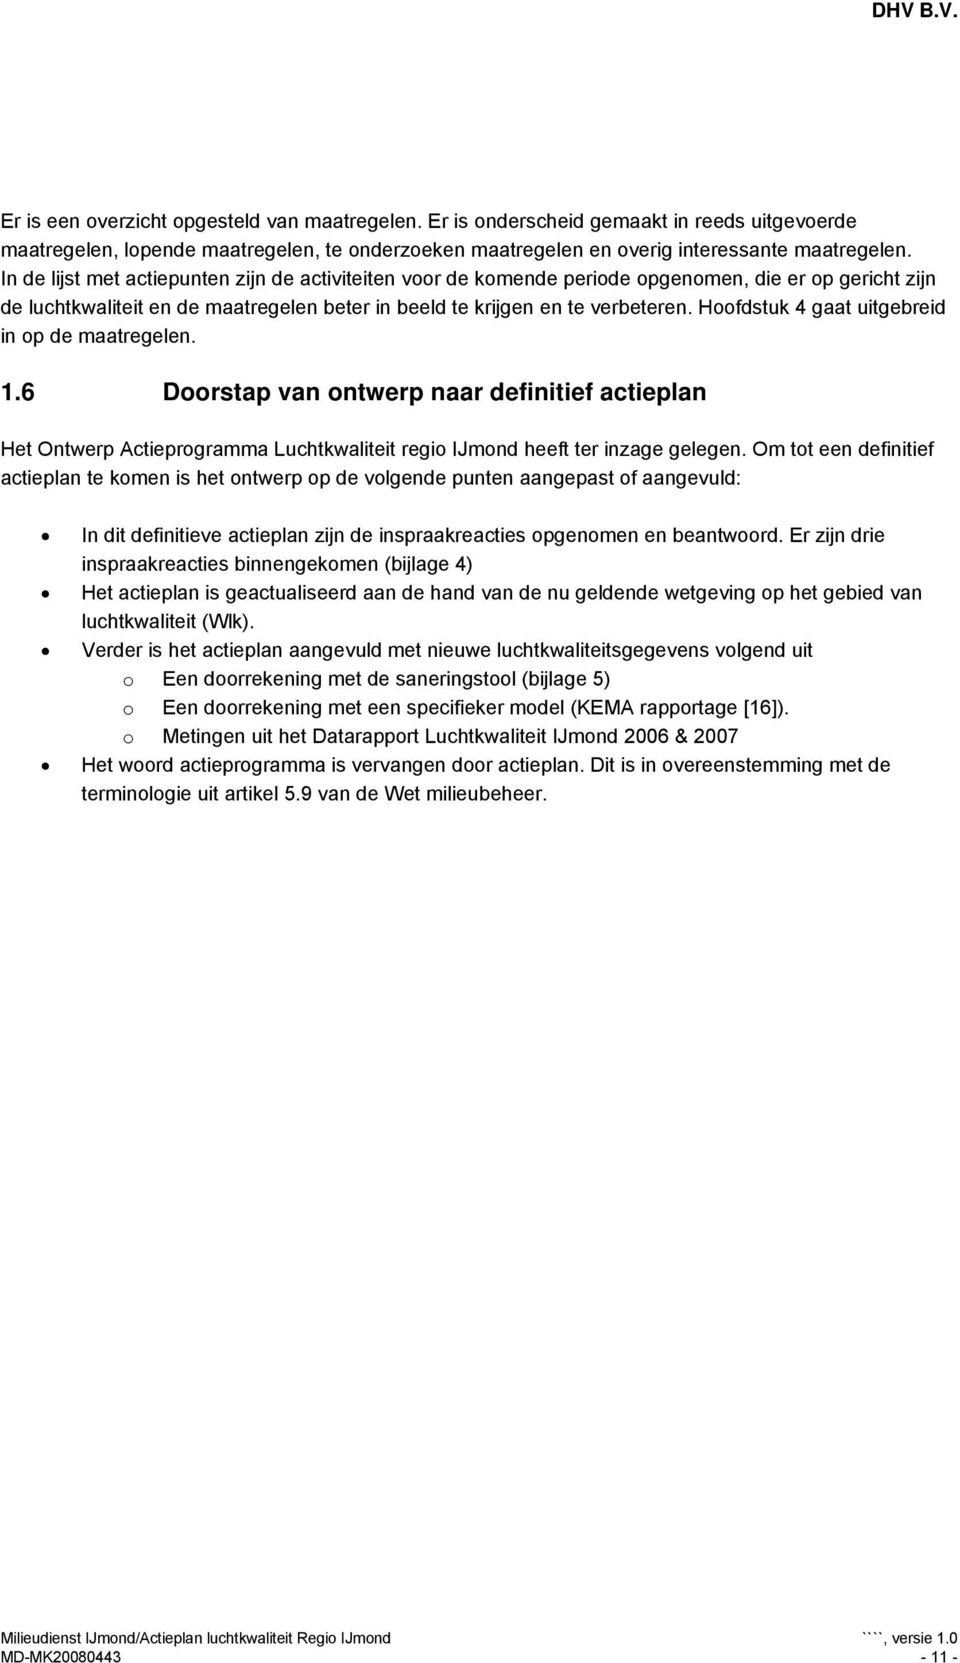 Hoofdstuk 4 gaat uitgebreid in op de maatregelen. 1.6 Doorstap van ontwerp naar definitief actieplan Het Ontwerp Actieprogramma Luchtkwaliteit regio IJmond heeft ter inzage gelegen.